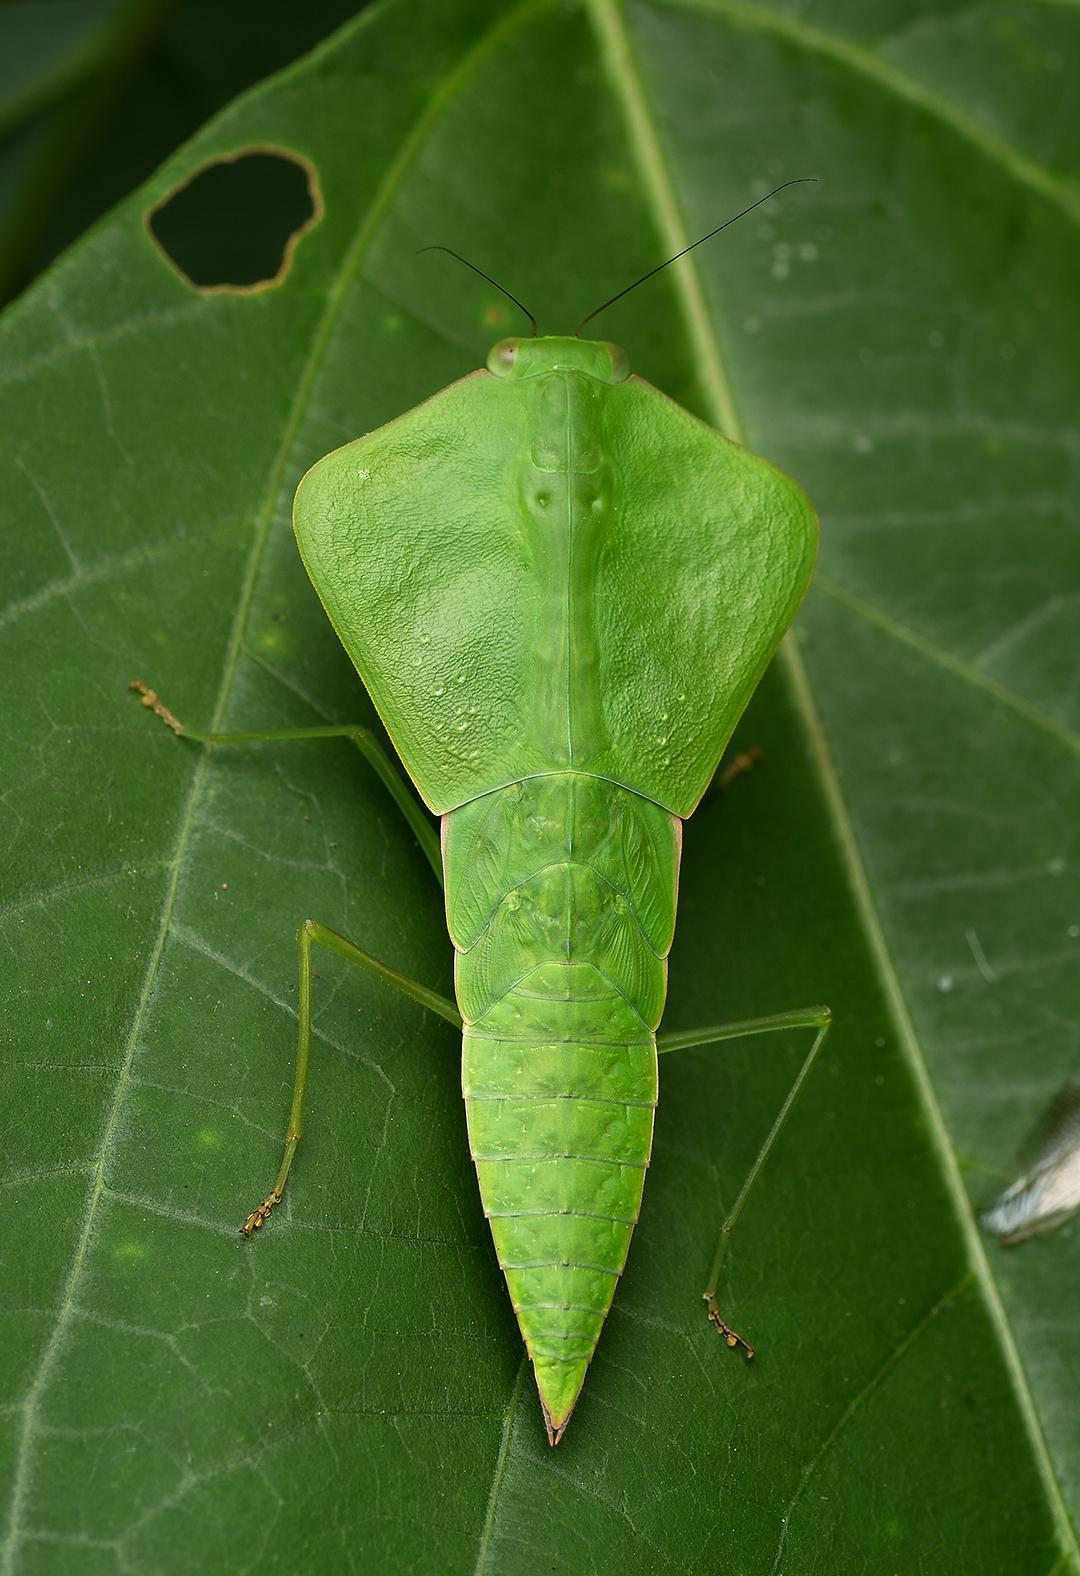 而这只叶背螳的若虫, 也为我在哥斯达黎加雨林的第一天完美的画上了